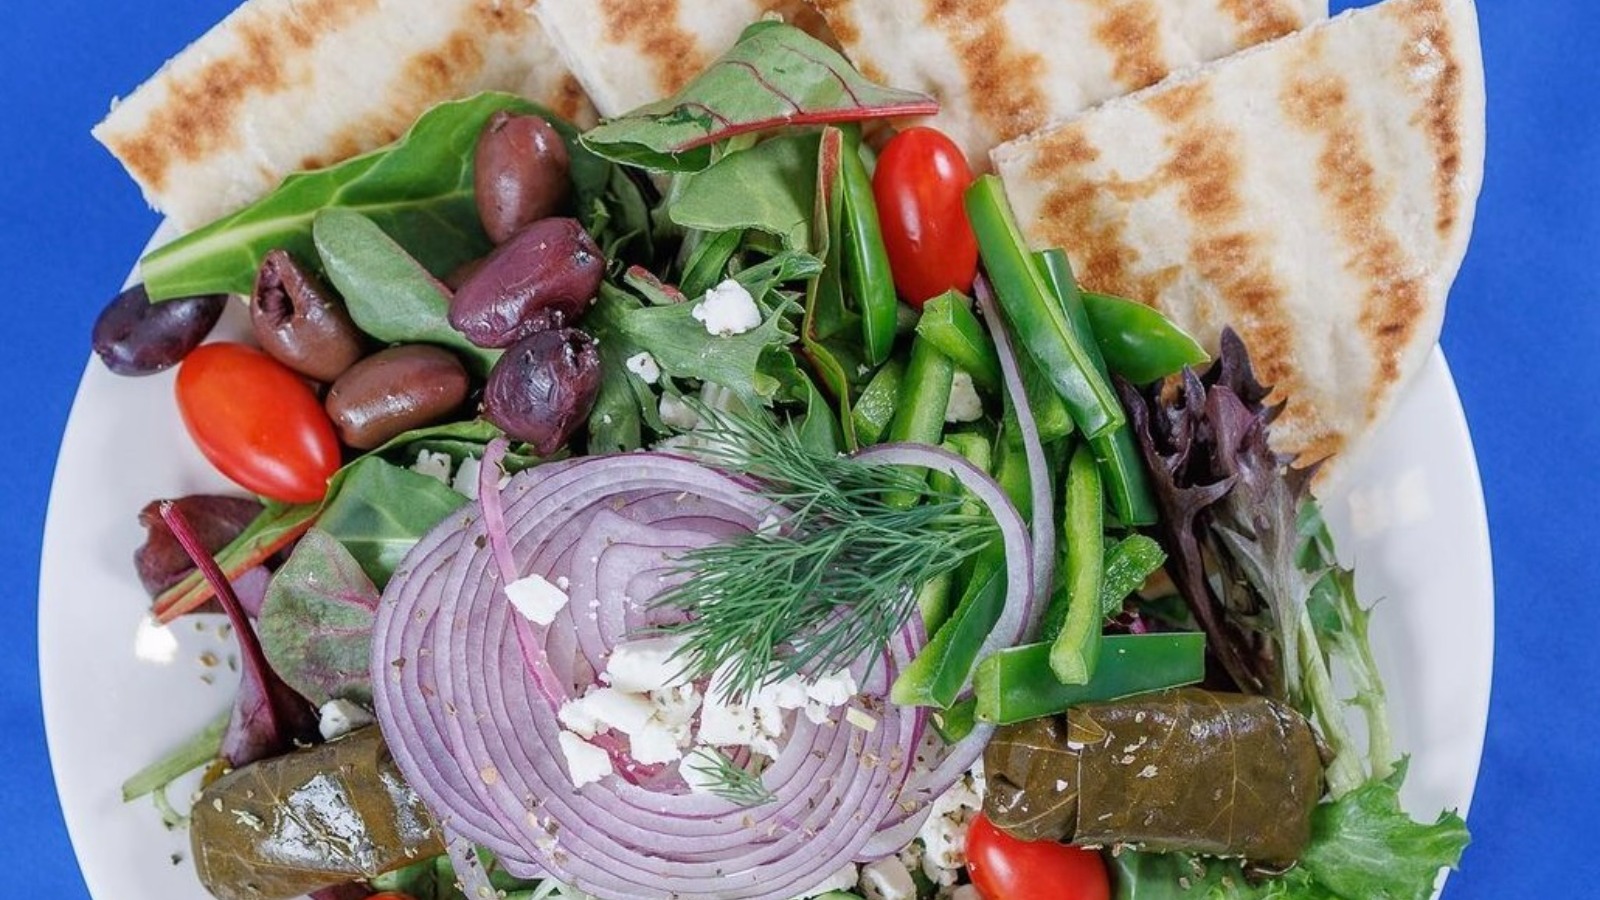 Voted best Gyro,salad,Mediterranean & Greek Event Photo